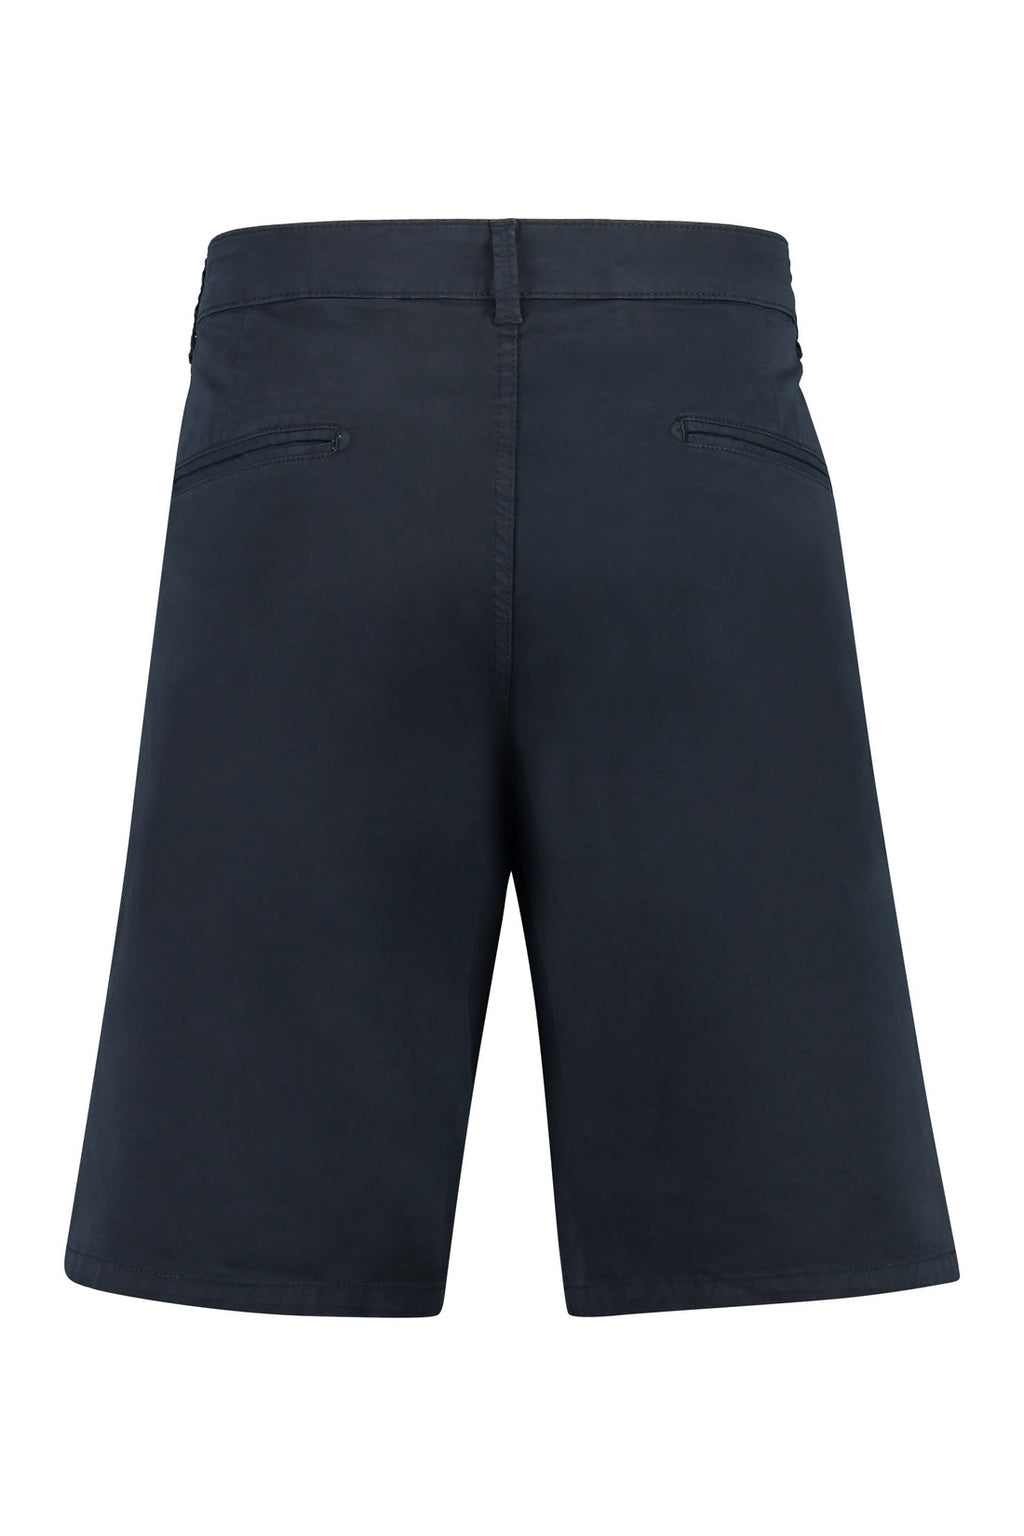 Aspesi-OUTLET-SALE-Cotton bermuda shorts-ARCHIVIST